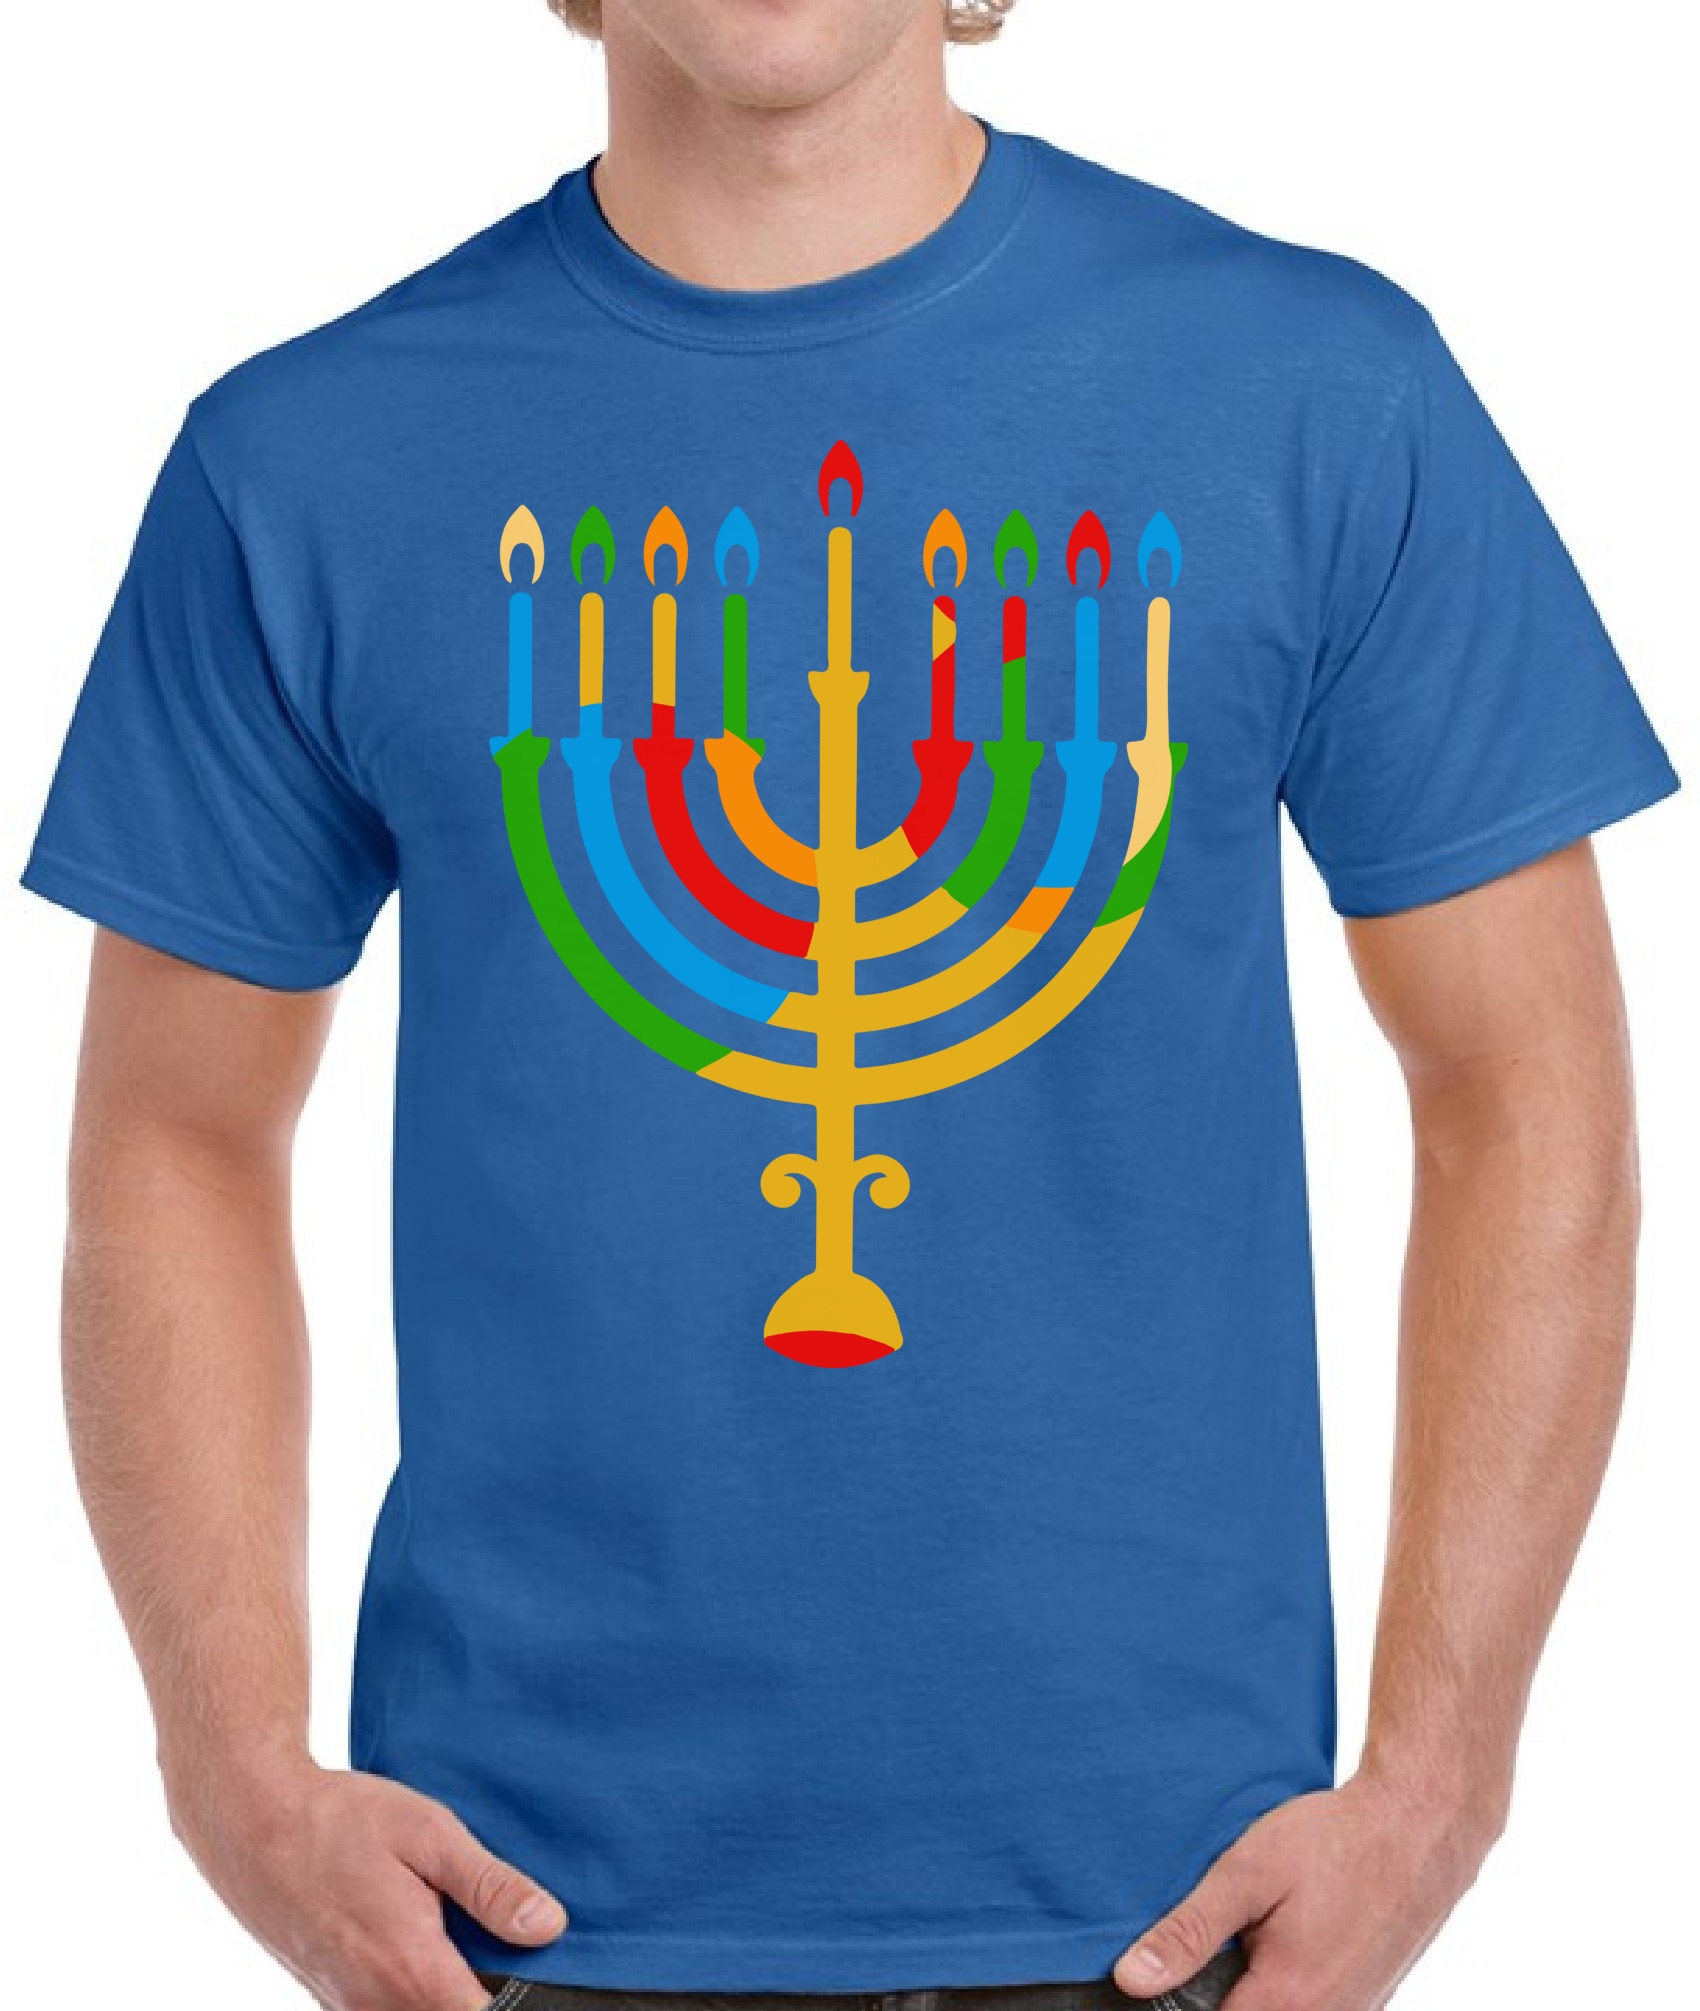 Funny Sloth Shirt This is My Pajamakah Shirt Jewish Gift Funny Hanukkah Shirt